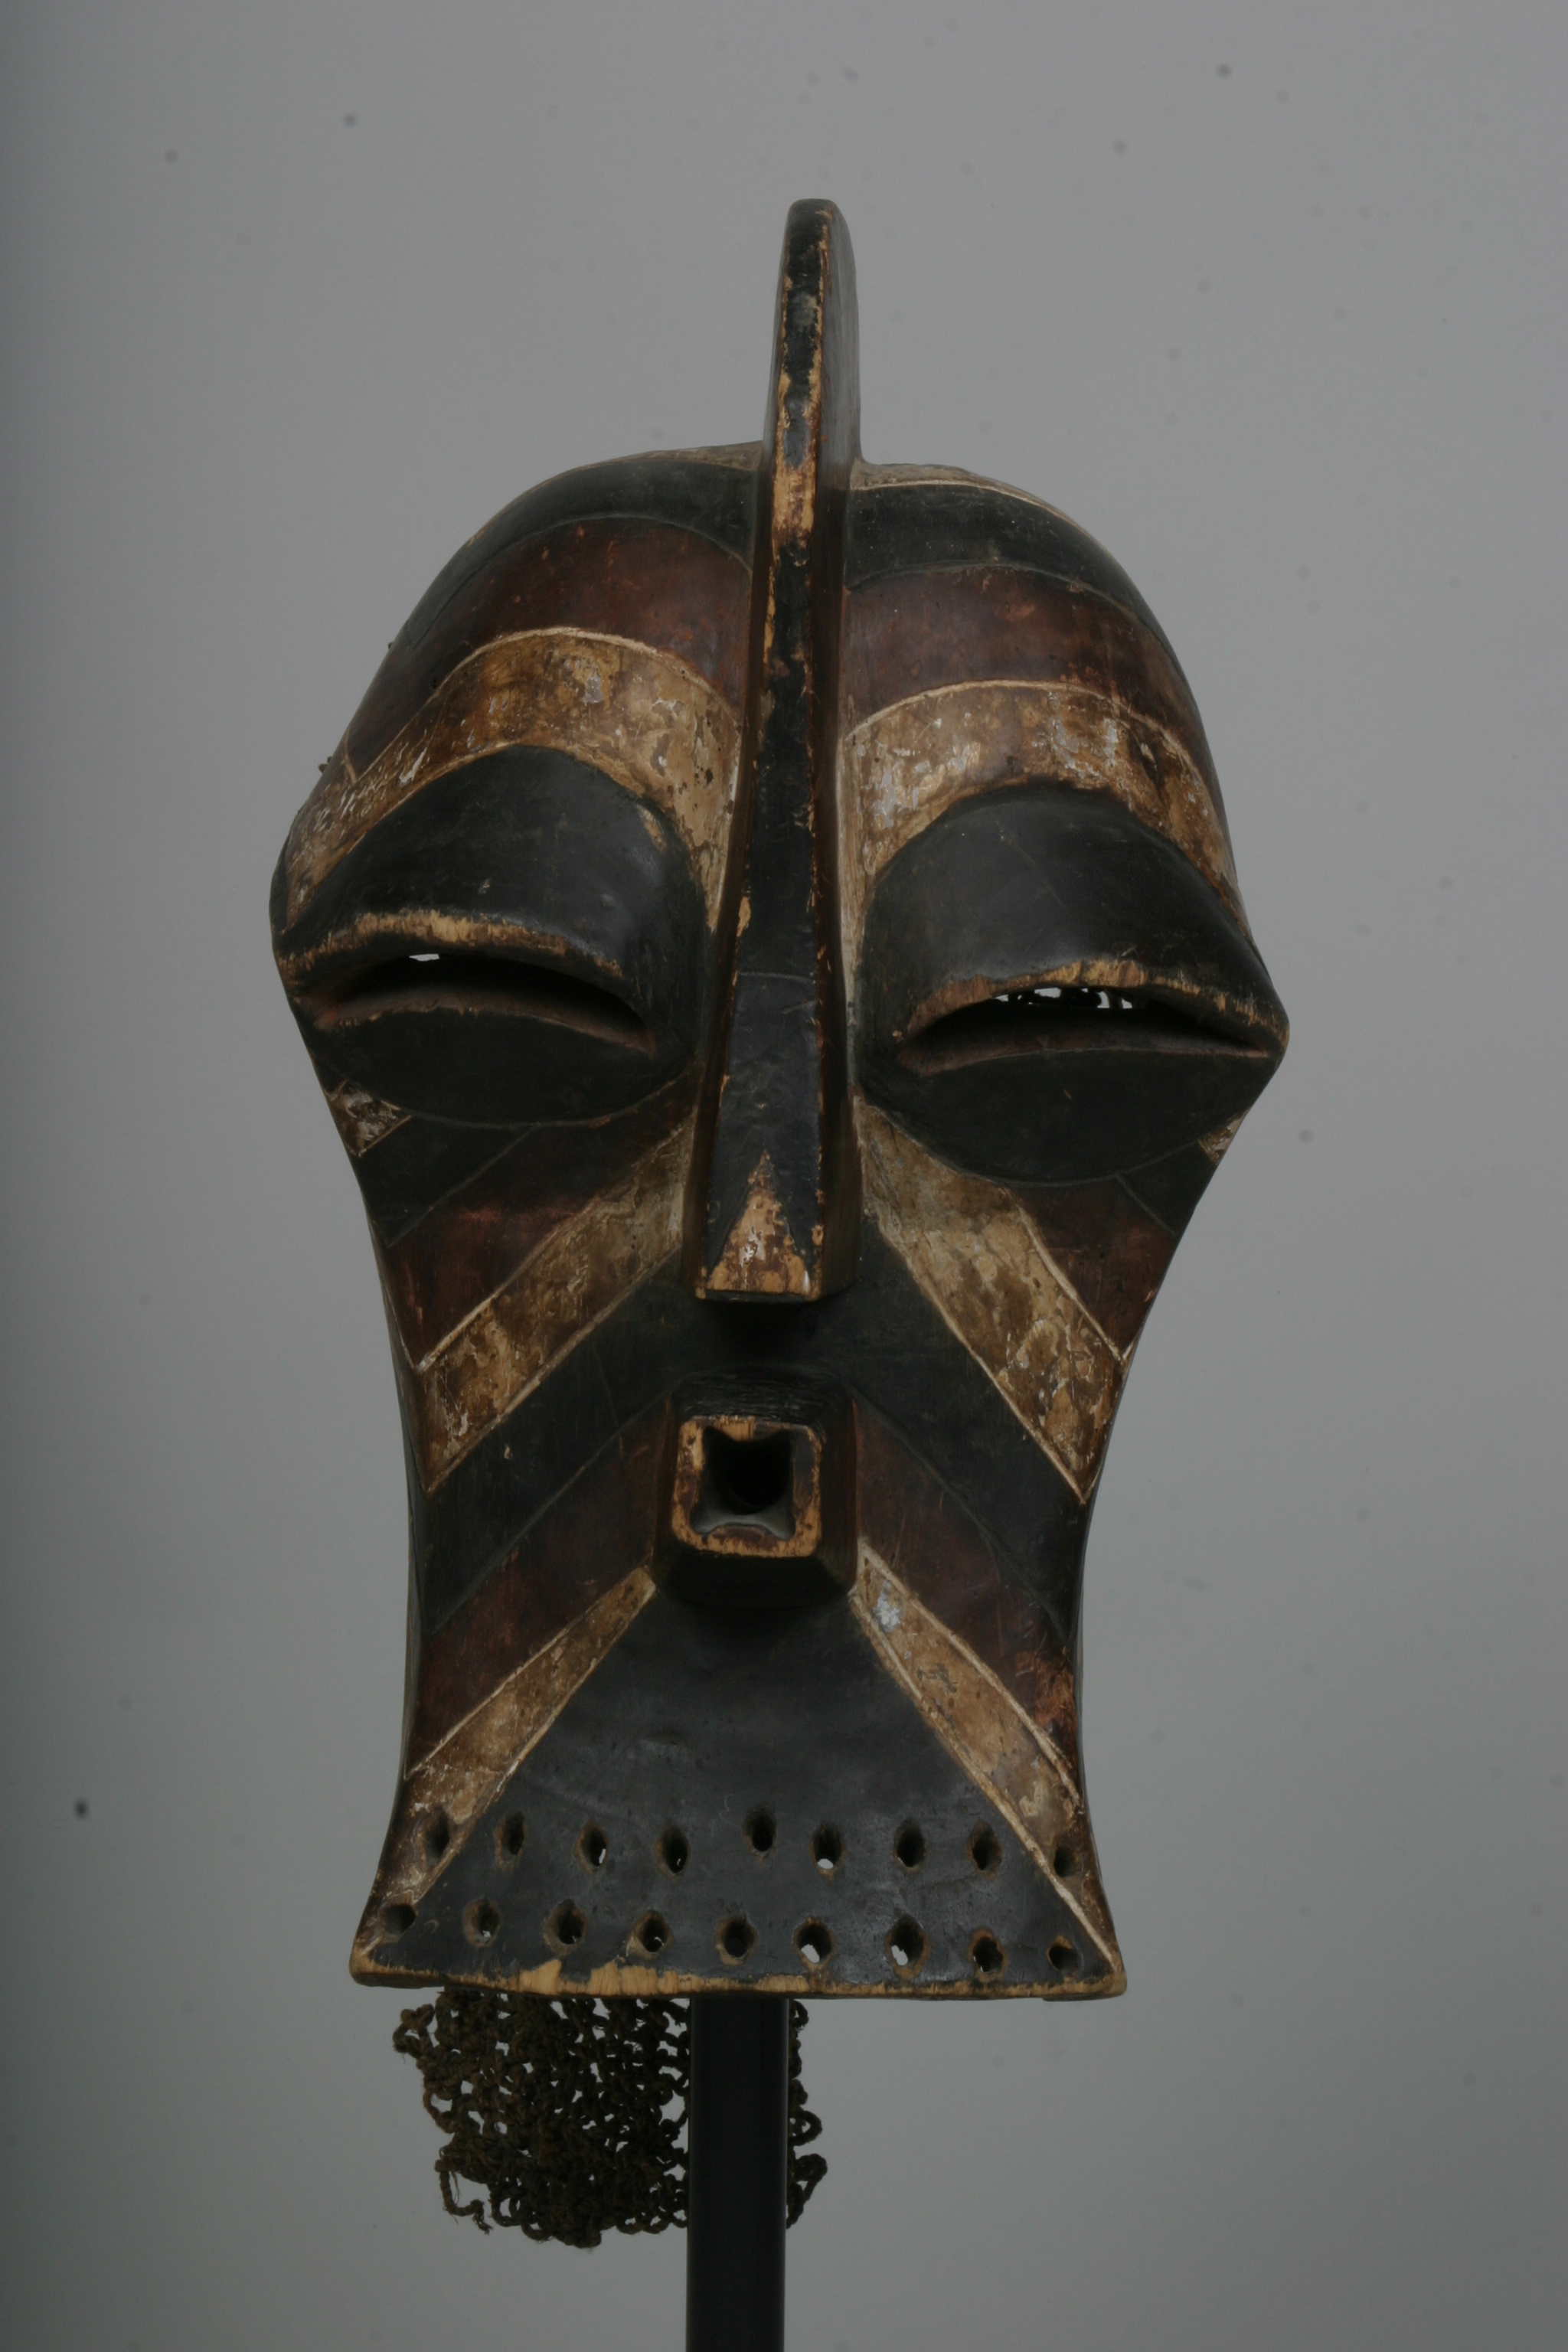 songye(masque), d`afrique : Rép. dém. Congo (Zaire), statuette songye(masque), masque ancien africain songye(masque), art du Rép. dém. Congo (Zaire) - Art Africain, collection privées Belgique. Statue africaine de la tribu des songye(masque), provenant du Rép. dém. Congo (Zaire), 685/112 Masque kifwébé sculpté avec une crête centrale généralement masculin(lisse 
s